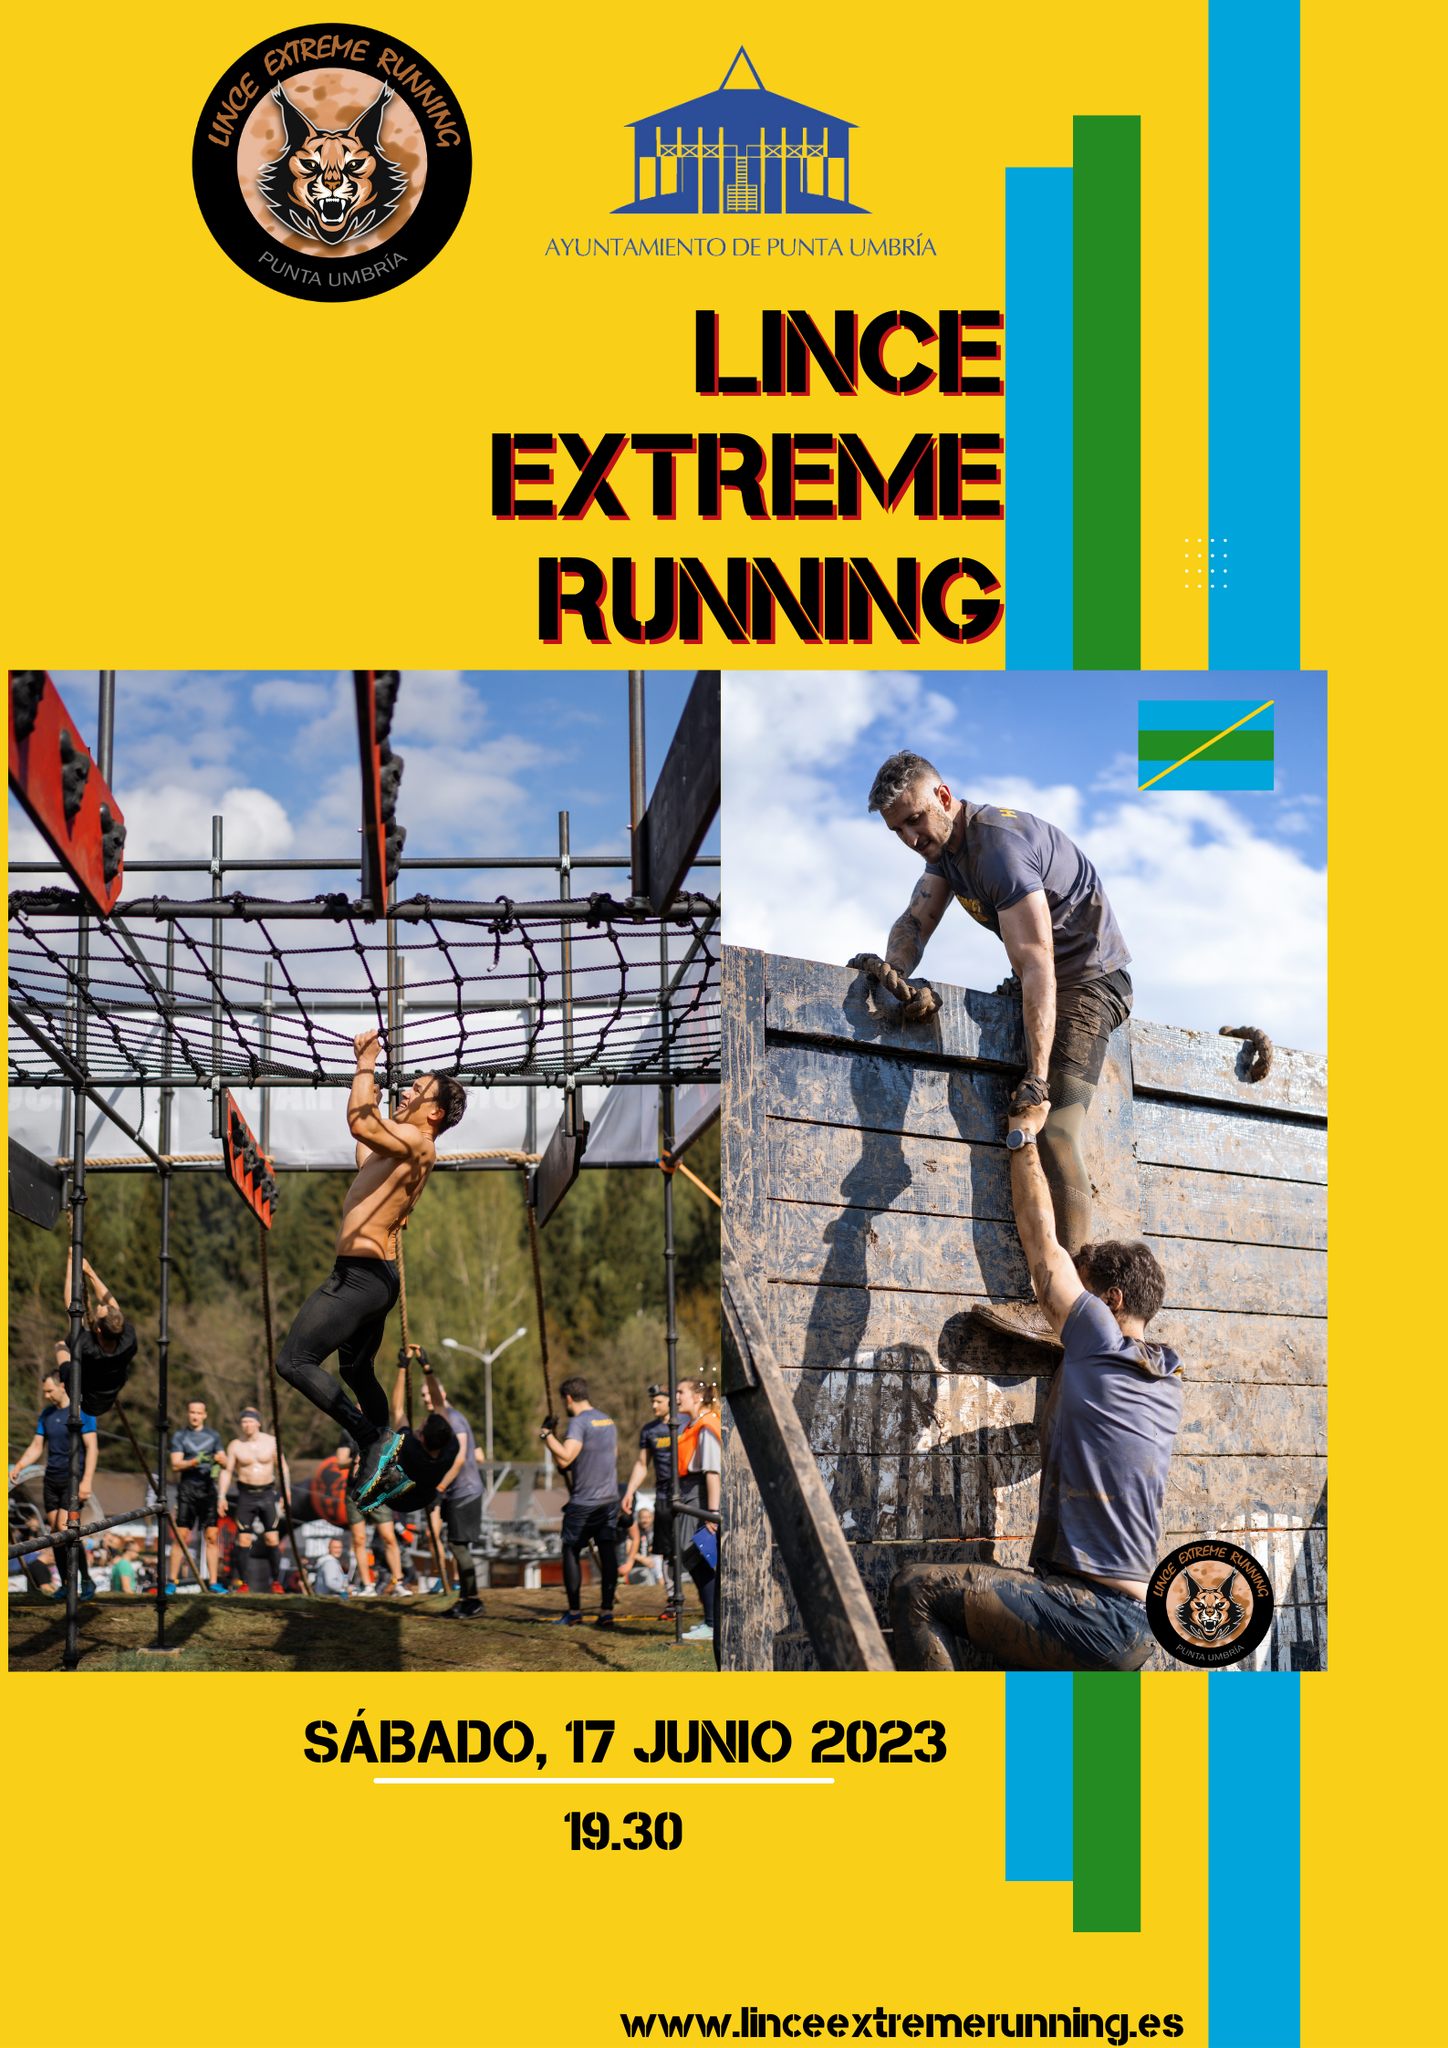 La 'Lince extreme running' de Punta Umbría cuenta ya con 350 participantes